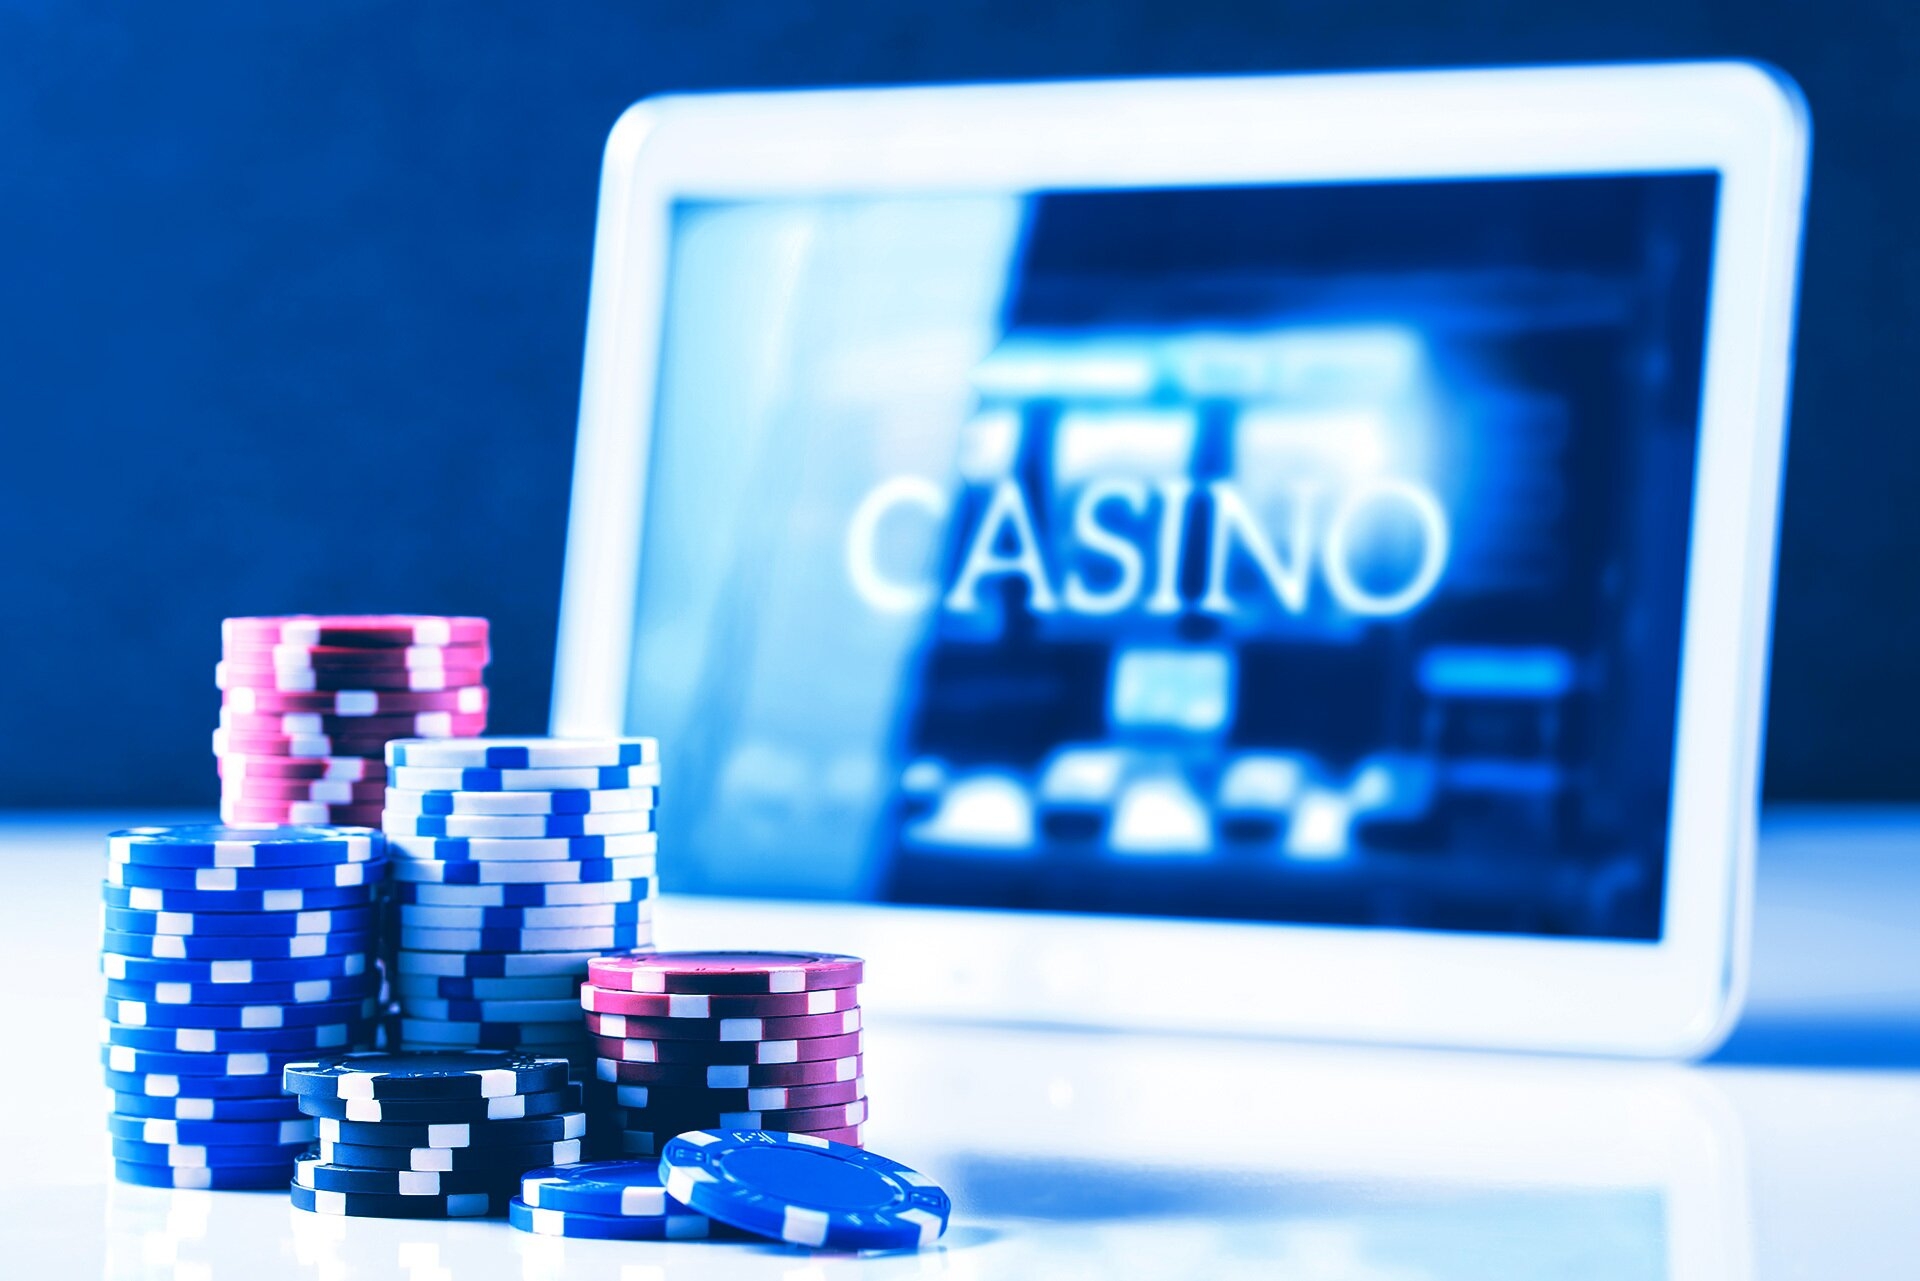 Mobile Instant Win Gaming Casinos Gambling